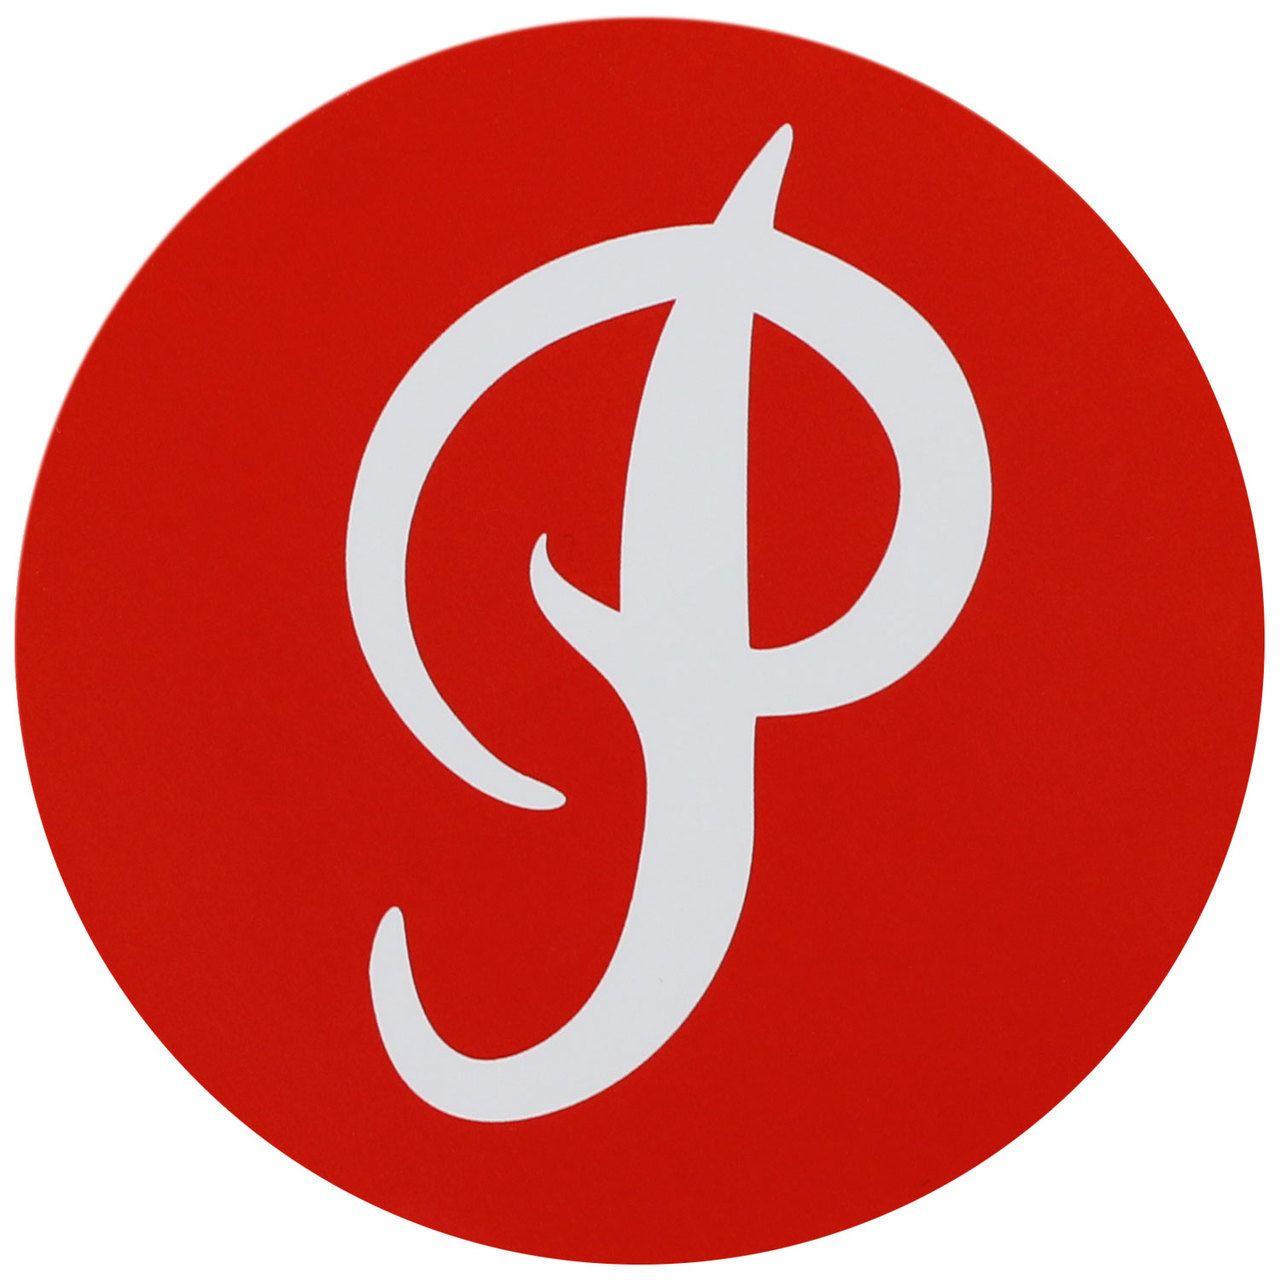 Circle in Red P Logo - Primitive Skateboard Sticker P Logo Circle Red 3